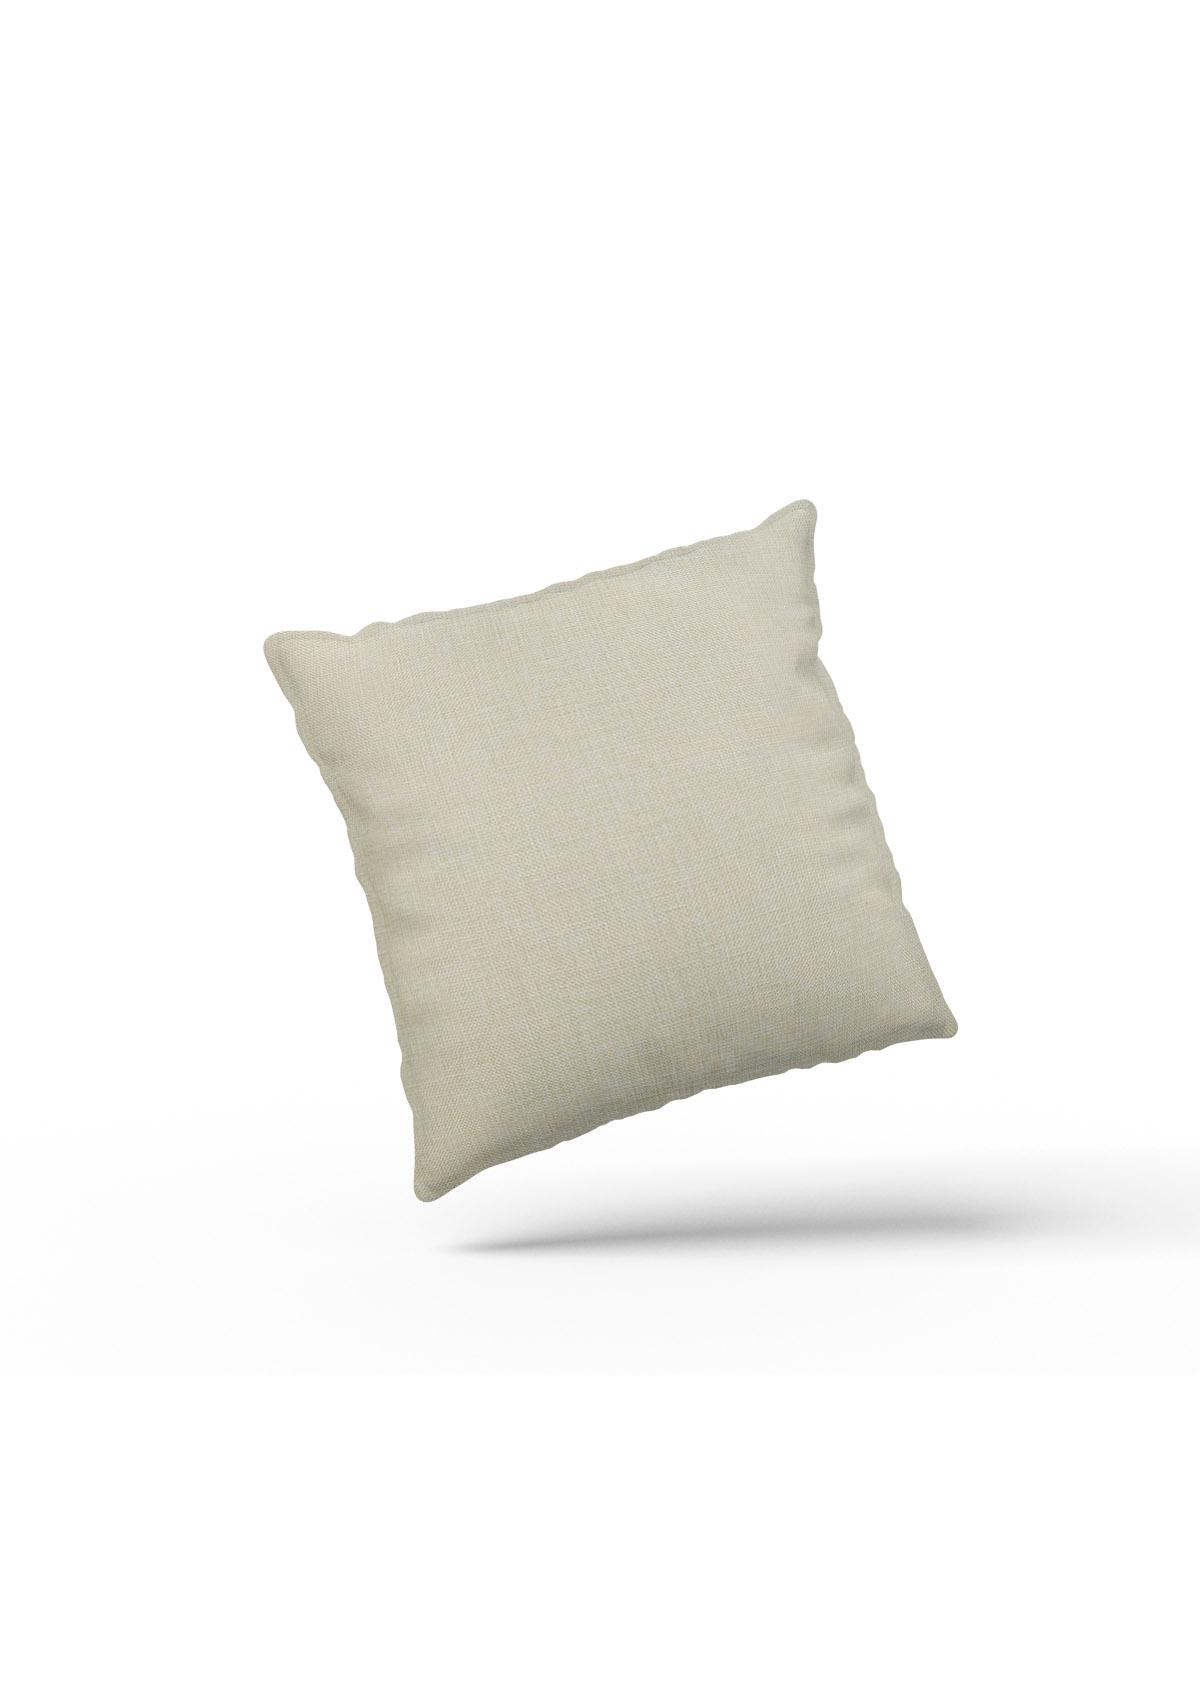 zebra cushion covers